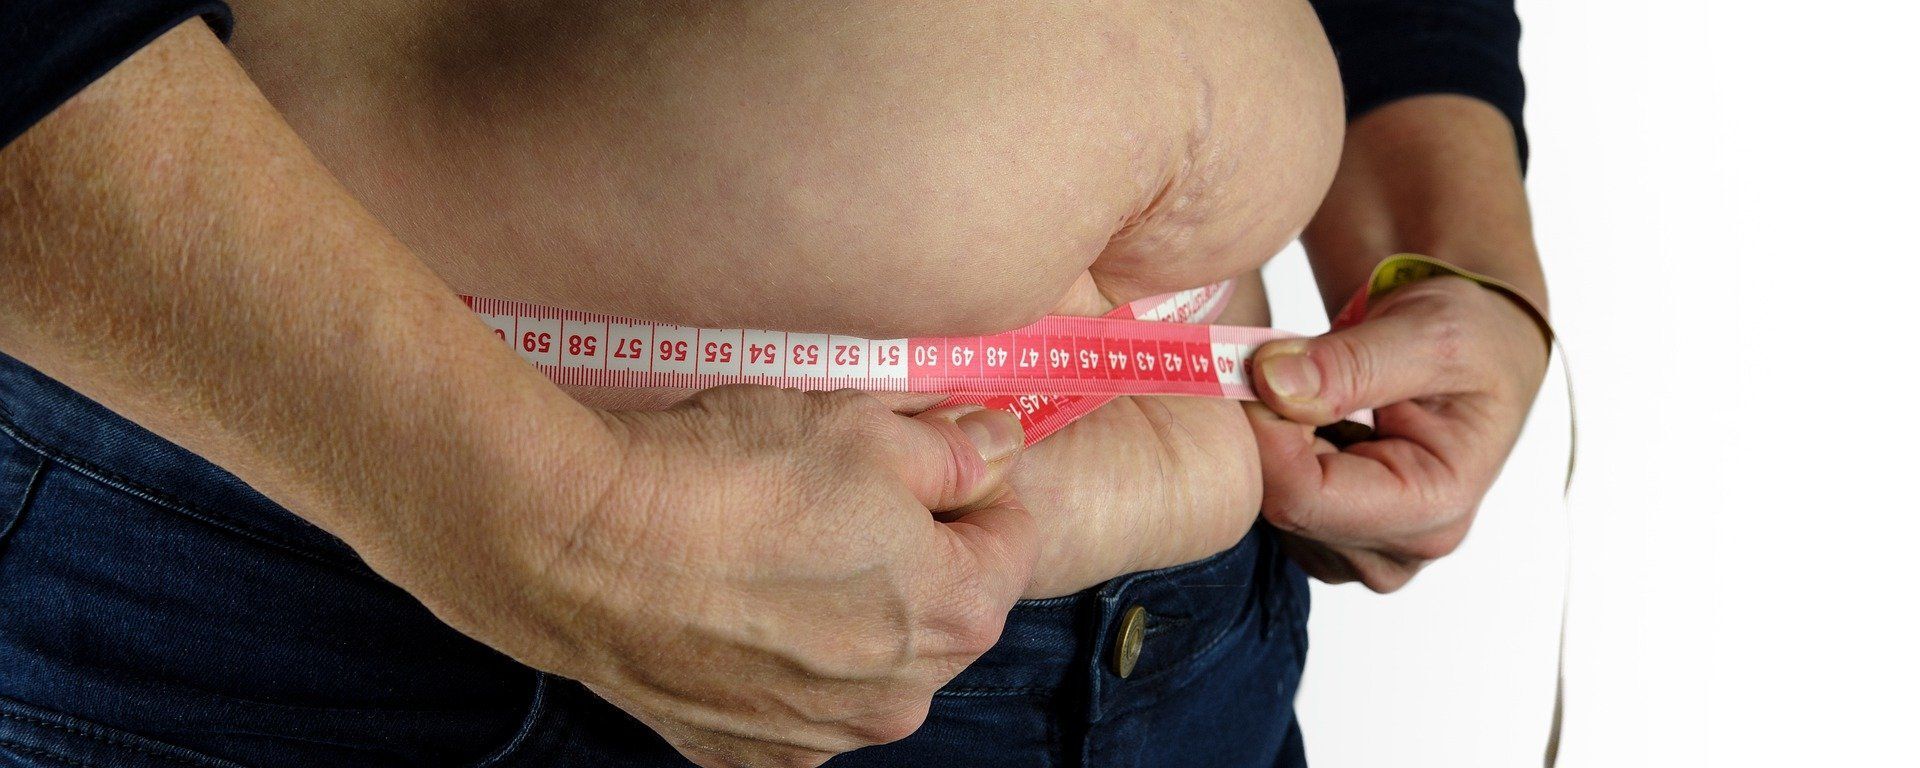 Una persona se mide la barriga con una cinta métrica - Sputnik Mundo, 1920, 11.01.2021